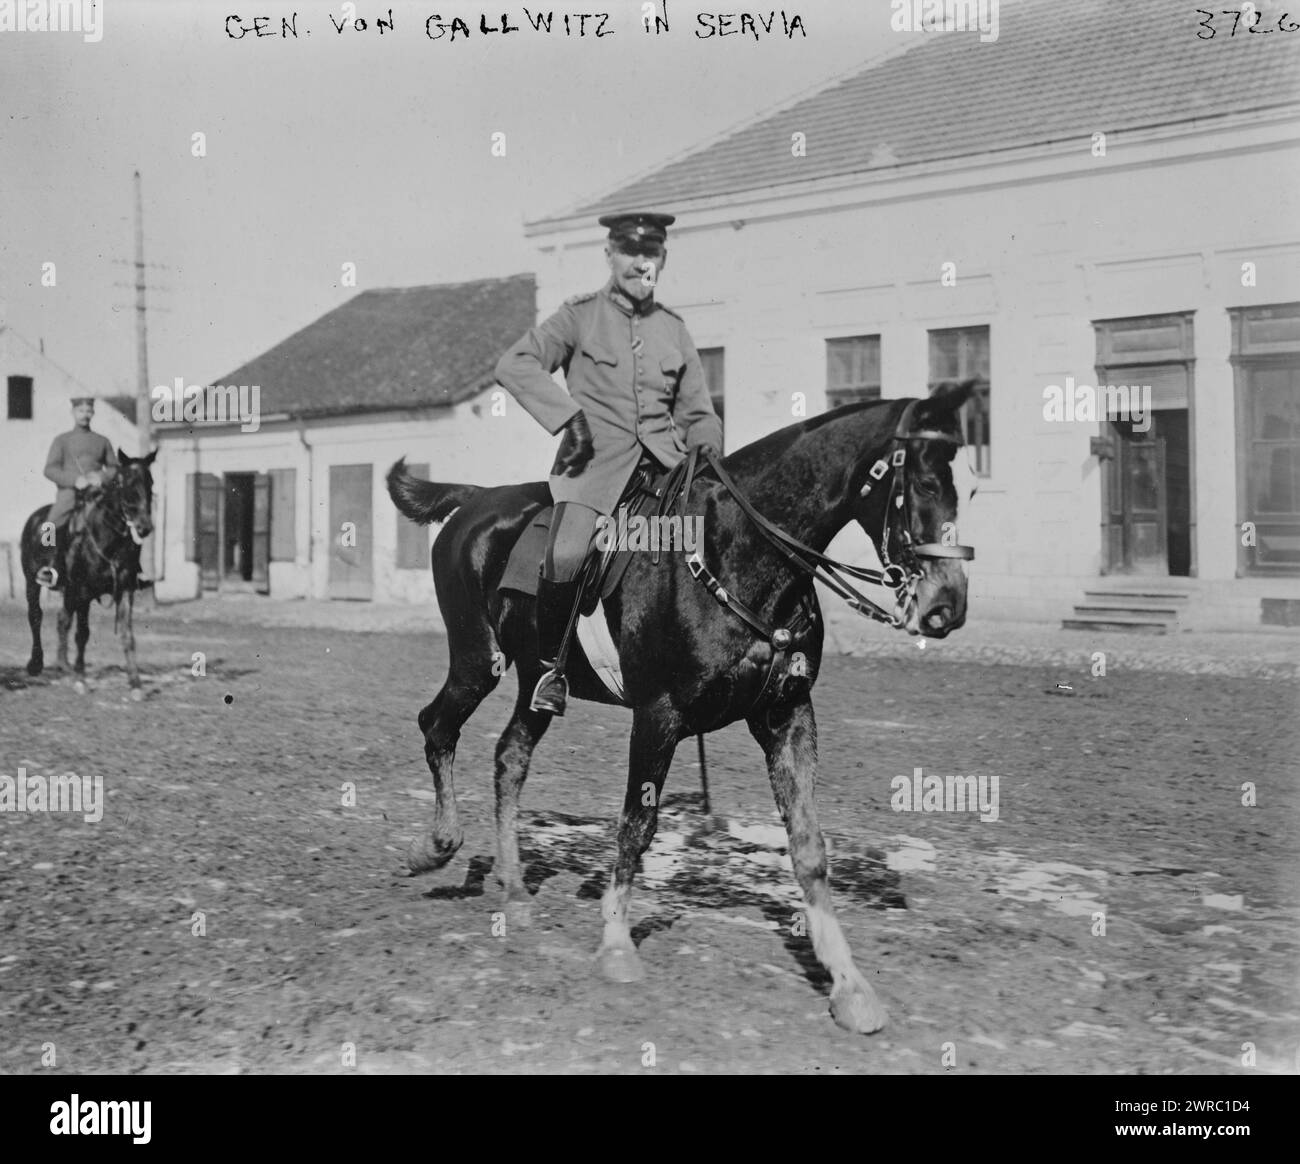 Gen. Von Gallwitz in Servia i.e. Serbia, Photograph shows Max Karl Wilhelm von Gallwitz (1852-1937, a German general from Breslau, Silesia, who served in World War I., between ca. 1910 and ca. 1920, Glass negatives, 1 negative: glass Stock Photo